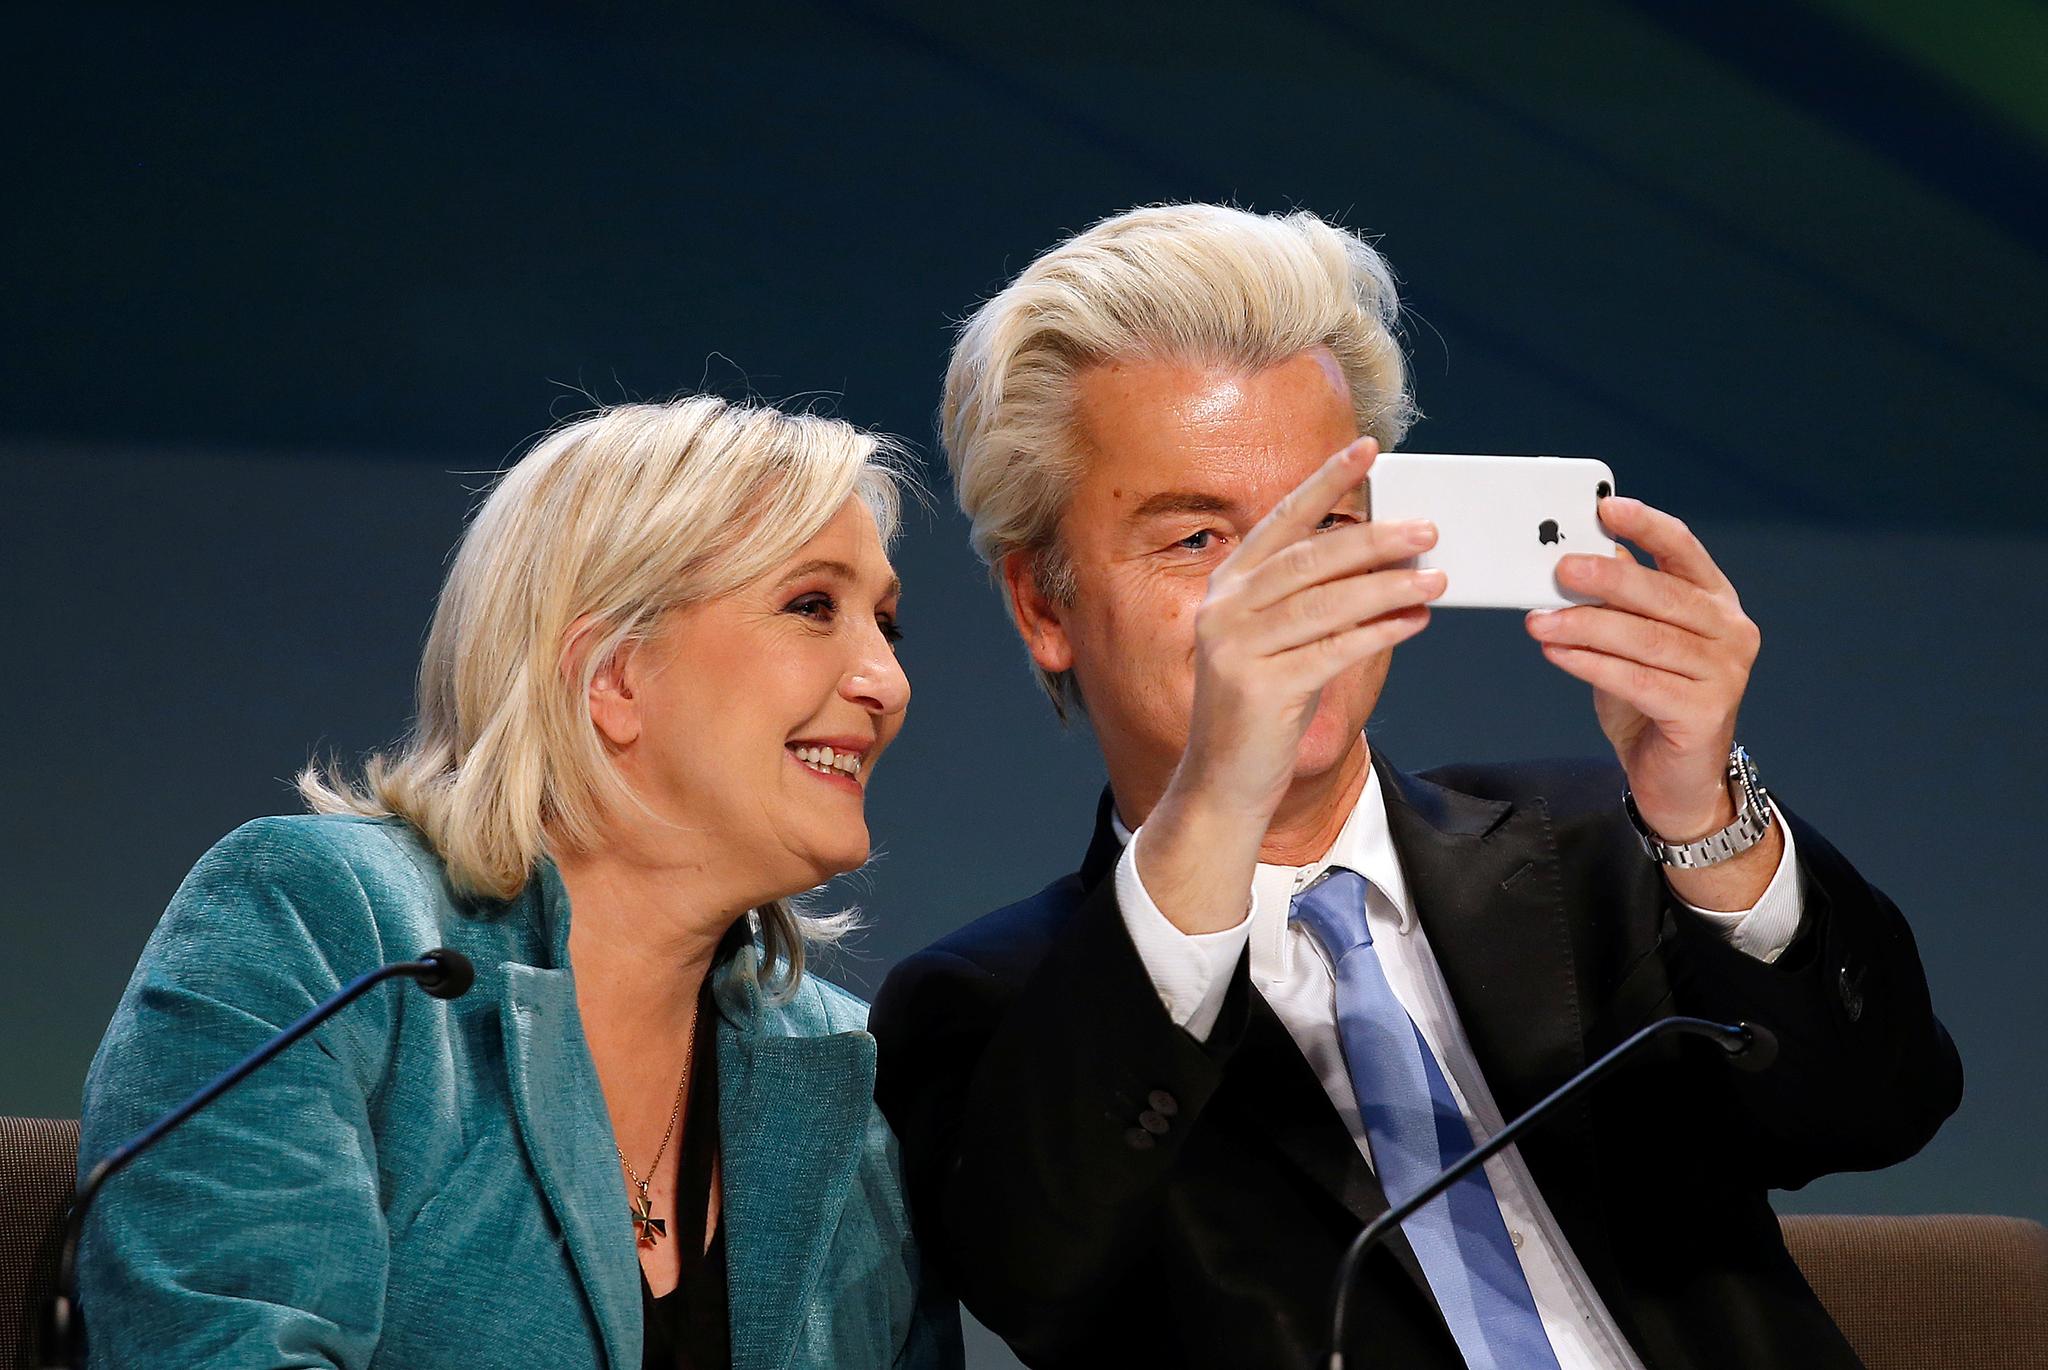 Nederlands Geert Wilders og franske Marine Le Pen er to av høyrepopulistene som skal hjelpe hverandre i valgkampene i år.